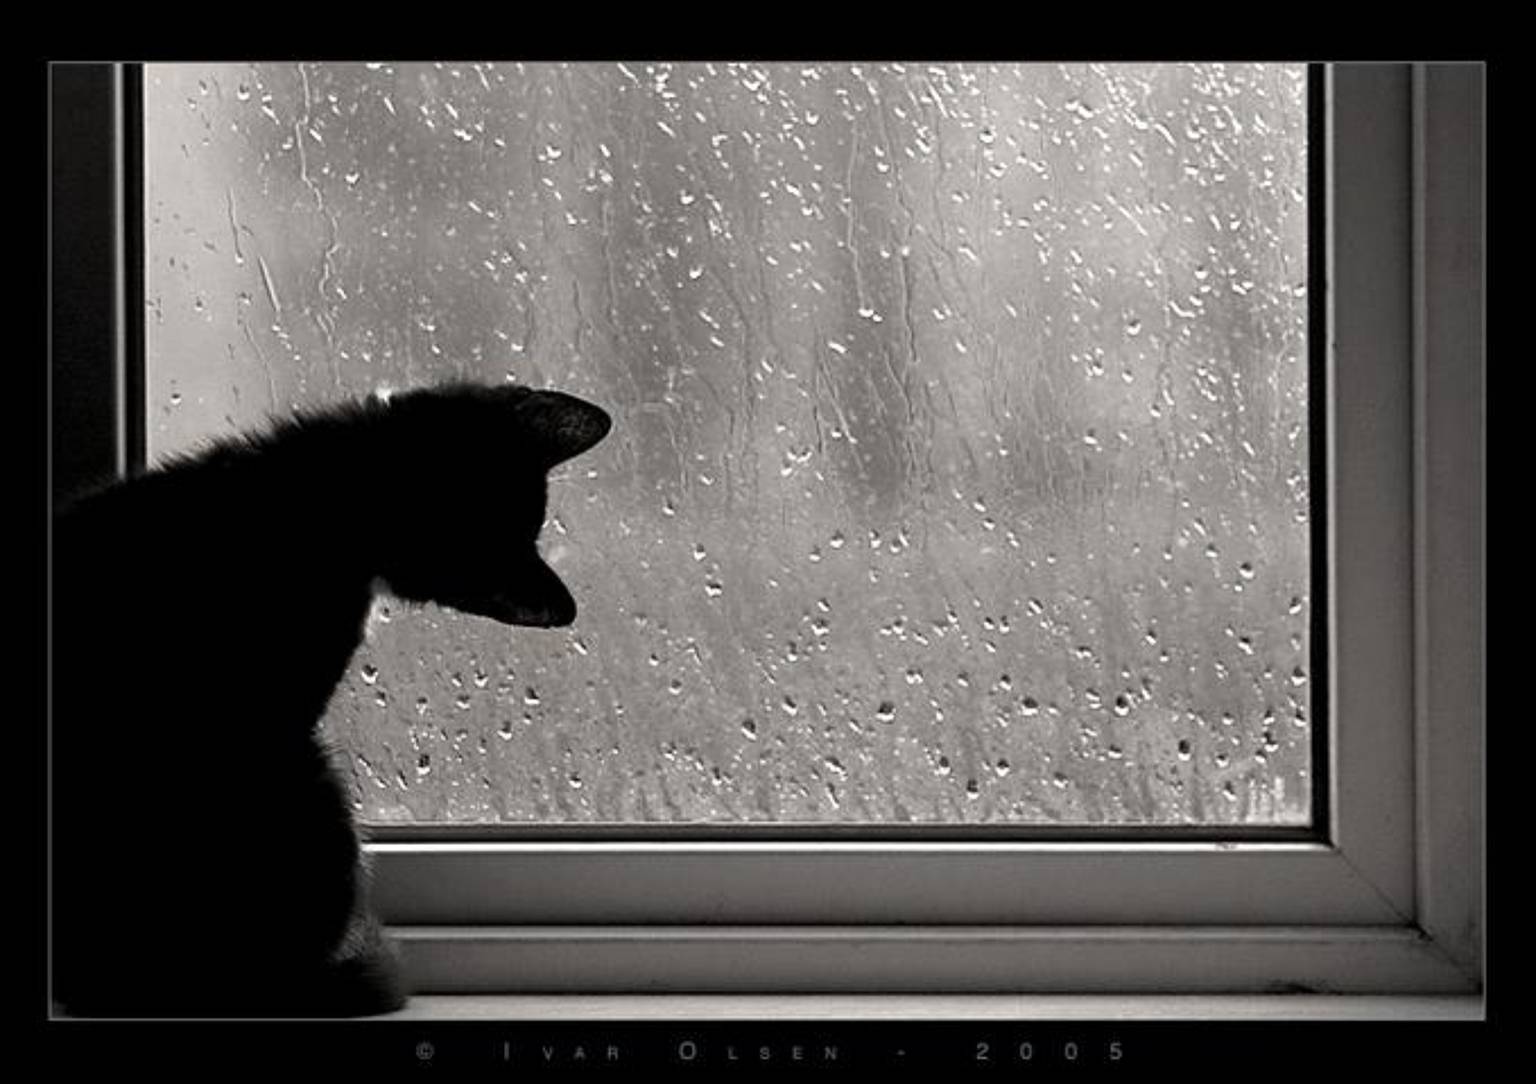 А за окном то дождь слушать